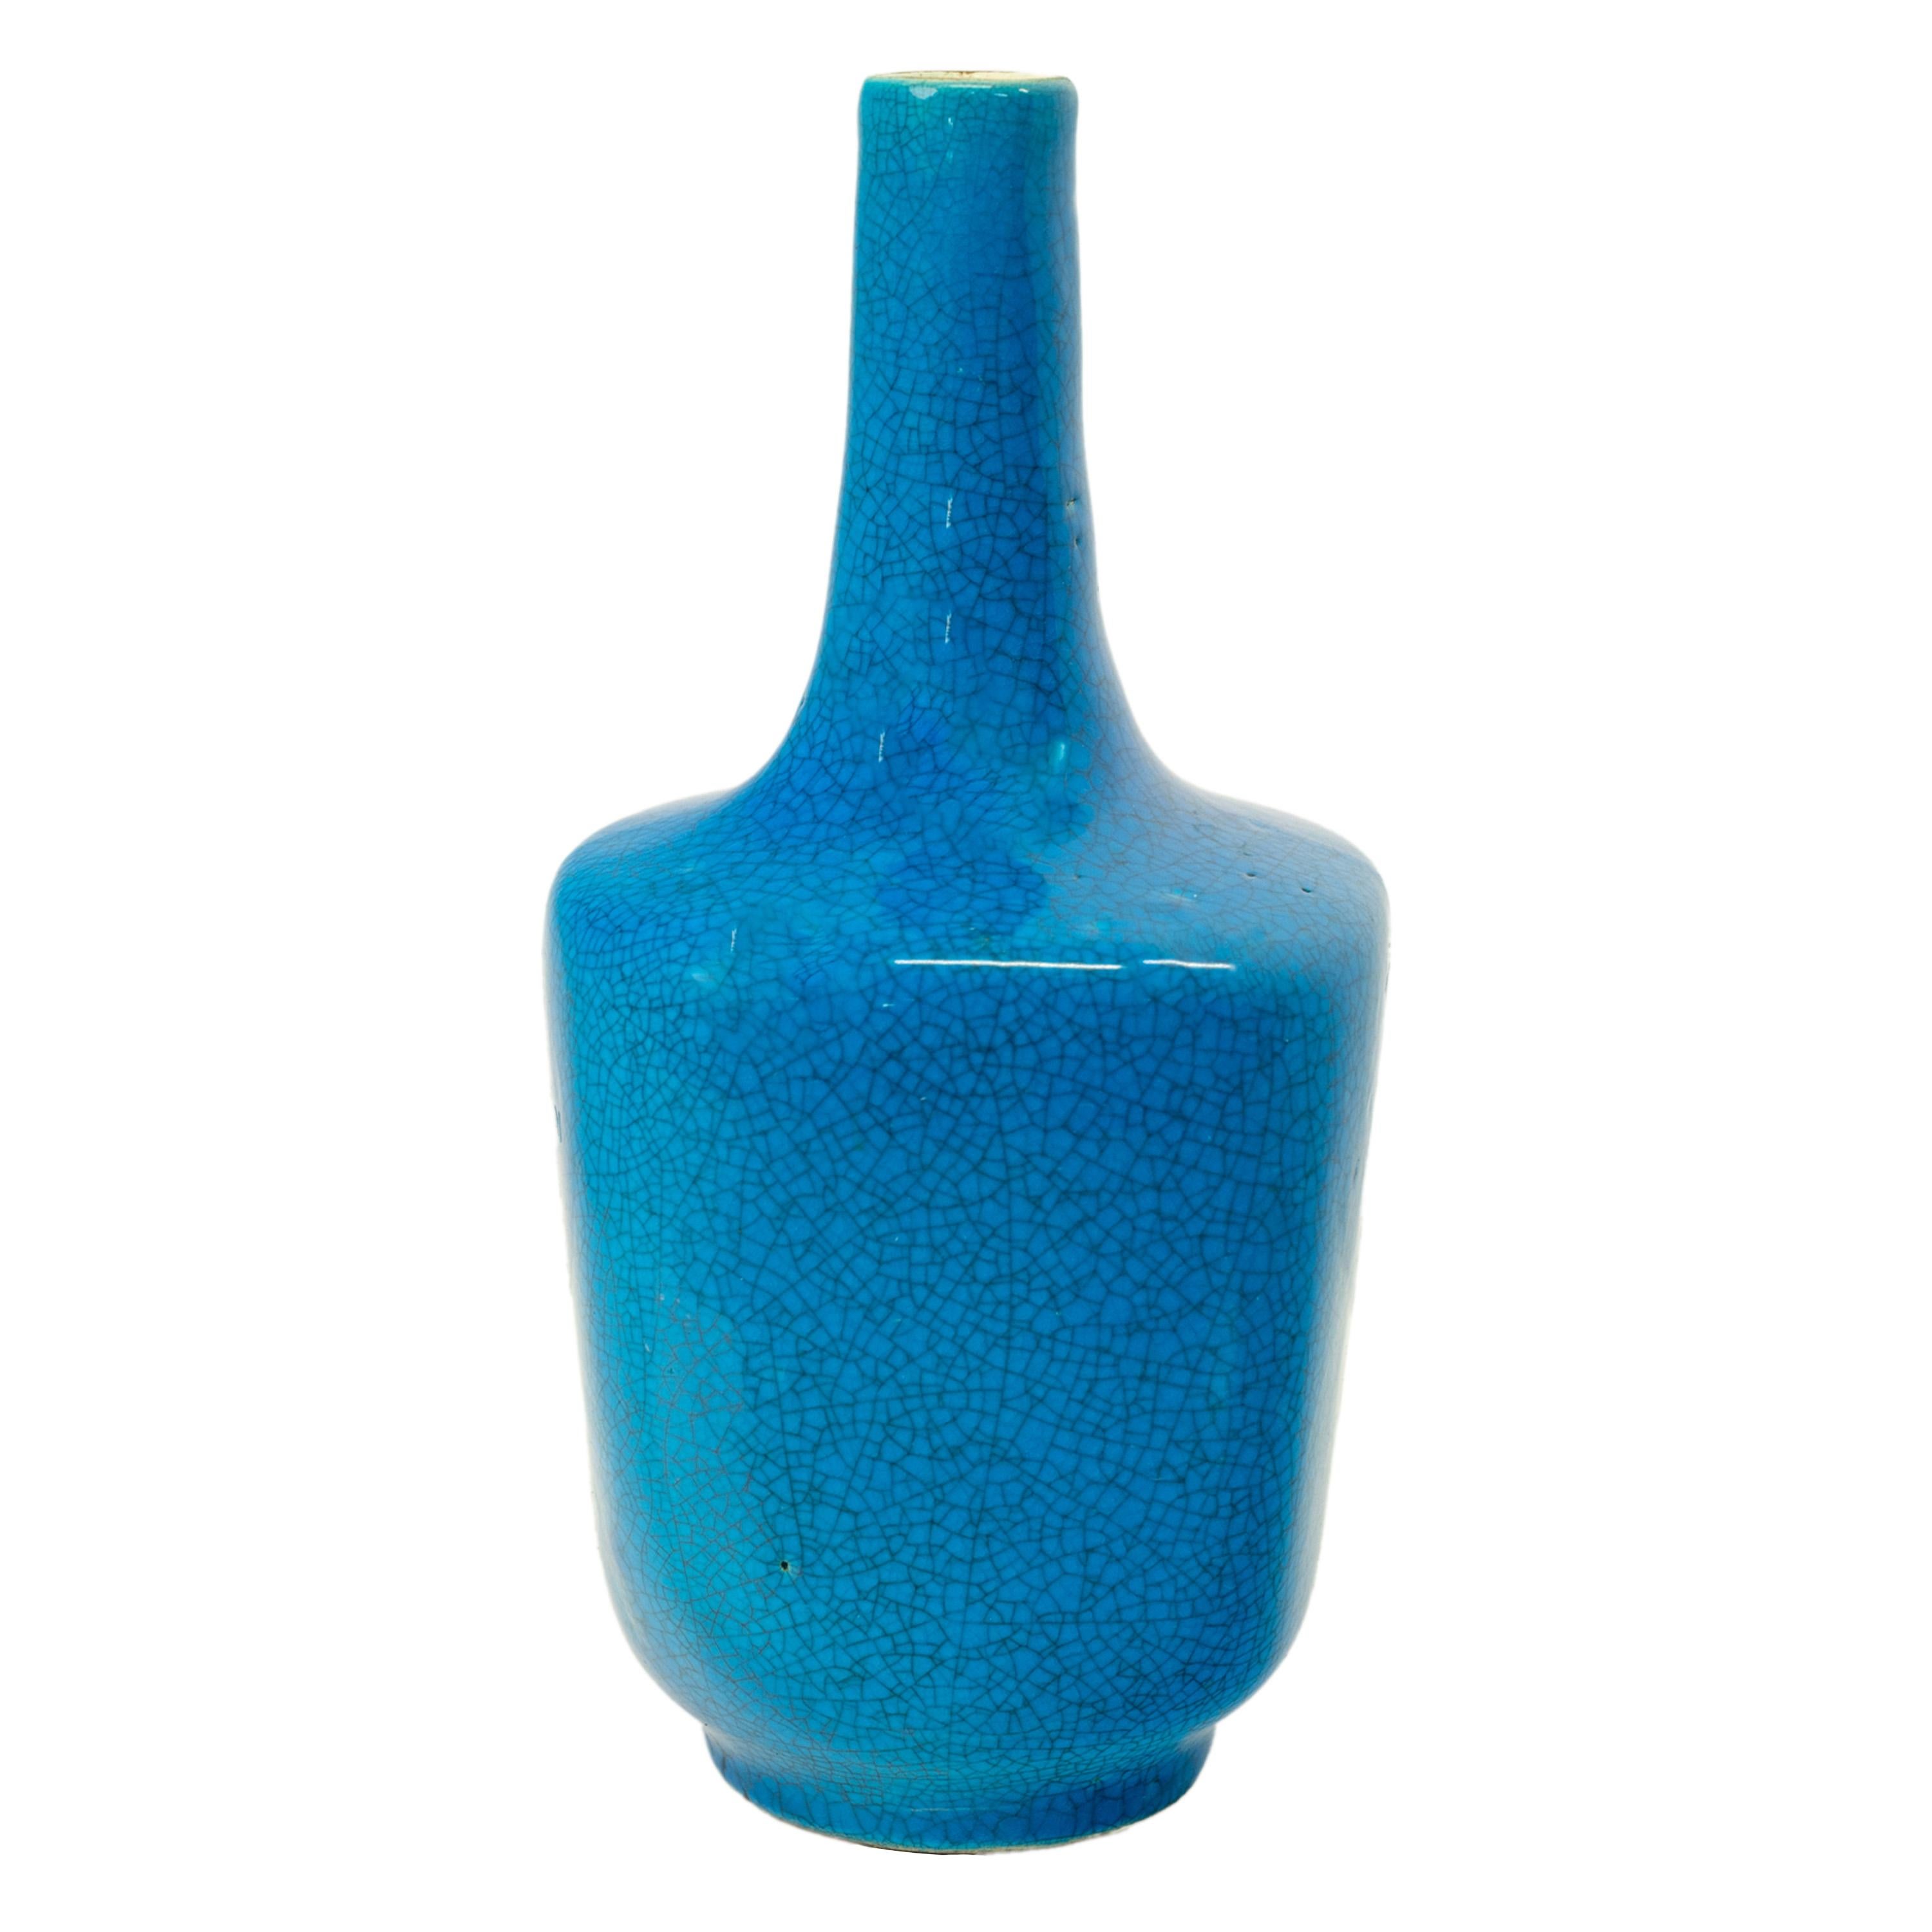 Eine gute antike Vase aus belgischer Blautöpferei mit Craquelé-Glasur, Charles Catteau für Boch Freres, um 1925.
Die flaschenförmige Vase hat einen 